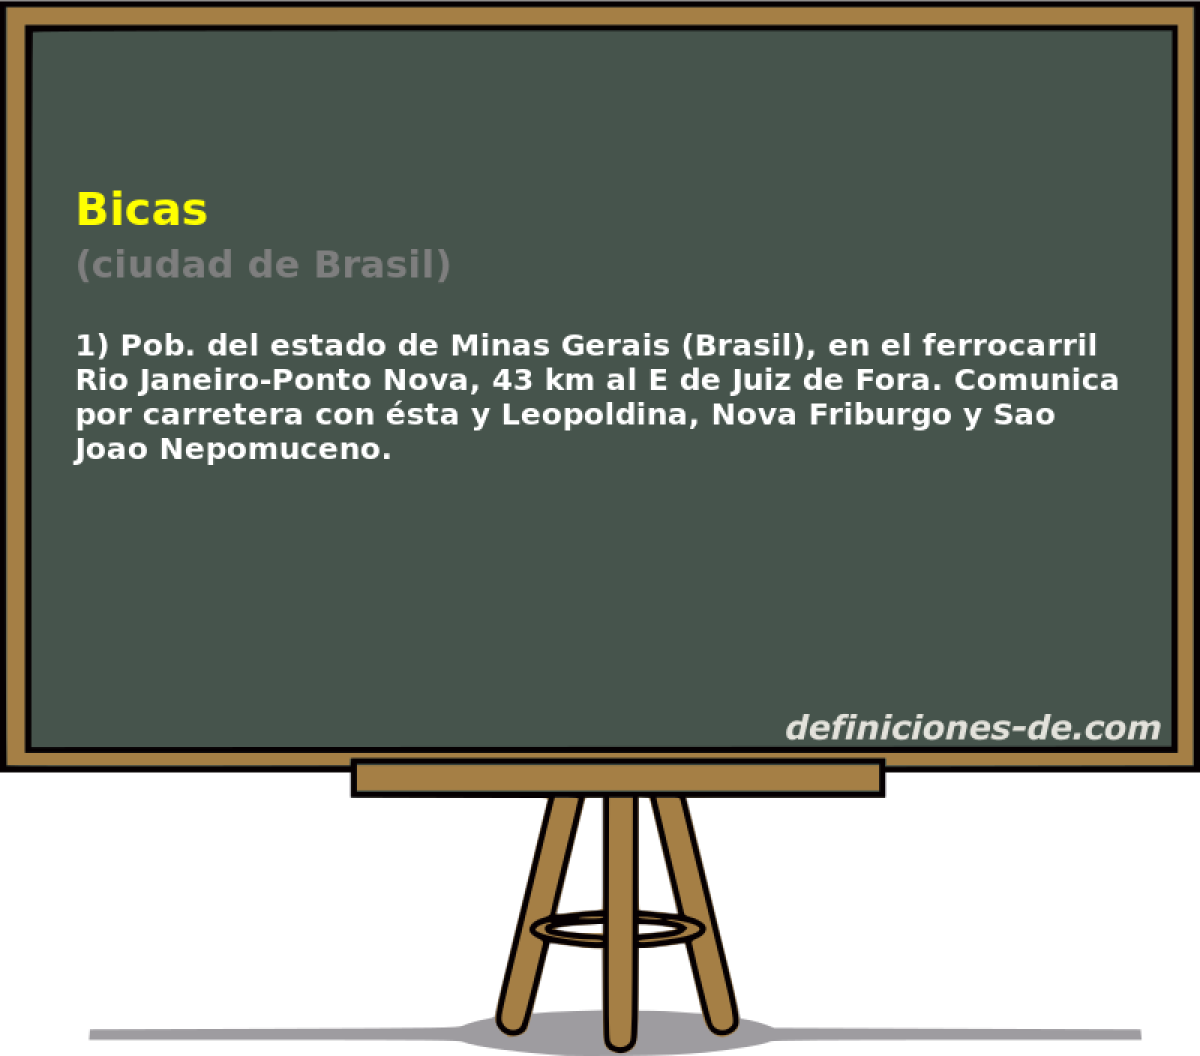 Bicas (ciudad de Brasil)